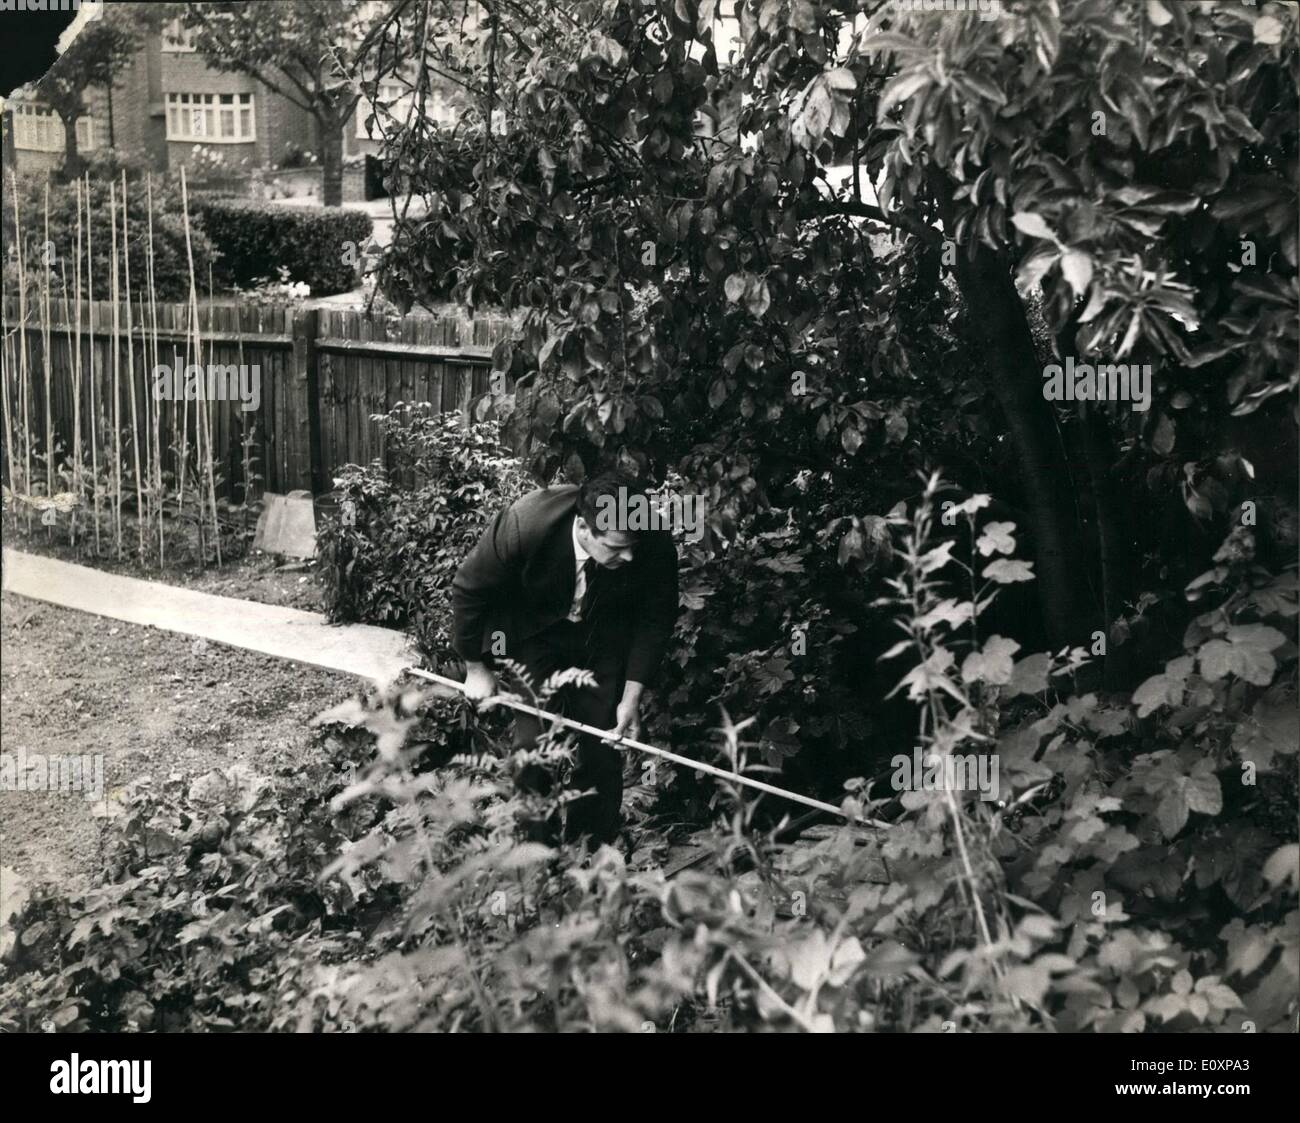 7. Juli 1967 - AU Pair Mädchen gefunden sterben In London Street: Ein Mini-Schürzen Au-Pair-Mädchen Französisch 26-jährige Odette Dumourier, die brutal angegriffen worden gefunden wurde, sterben heute unter einem schlechten von Rosen in einem Garten von Nr. 4 Kenwood Avenue, Southgate, London. Die Entdeckung wurde von einem Mann nach Mitternacht vorbei, sie hatte über den Kopf geschlagen worden und wurde über eine niedrige Mauer geworfen Stockfoto